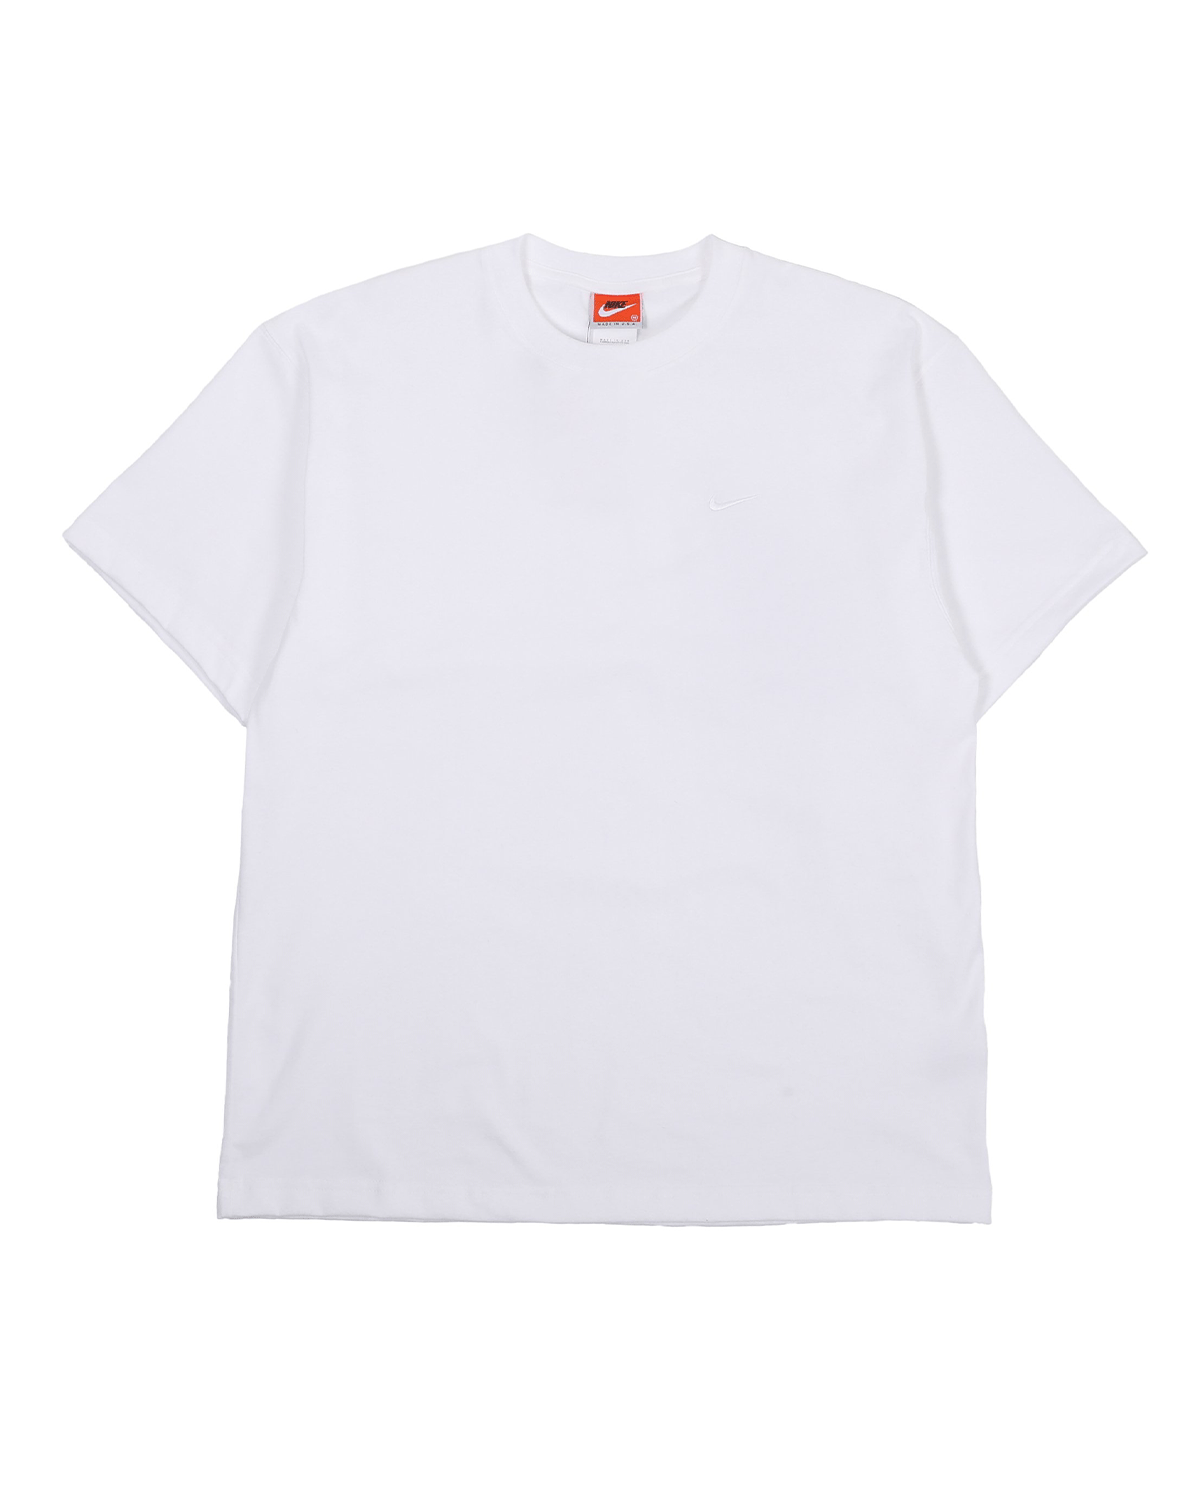 NRG Miusa T-Shirt White/White/White